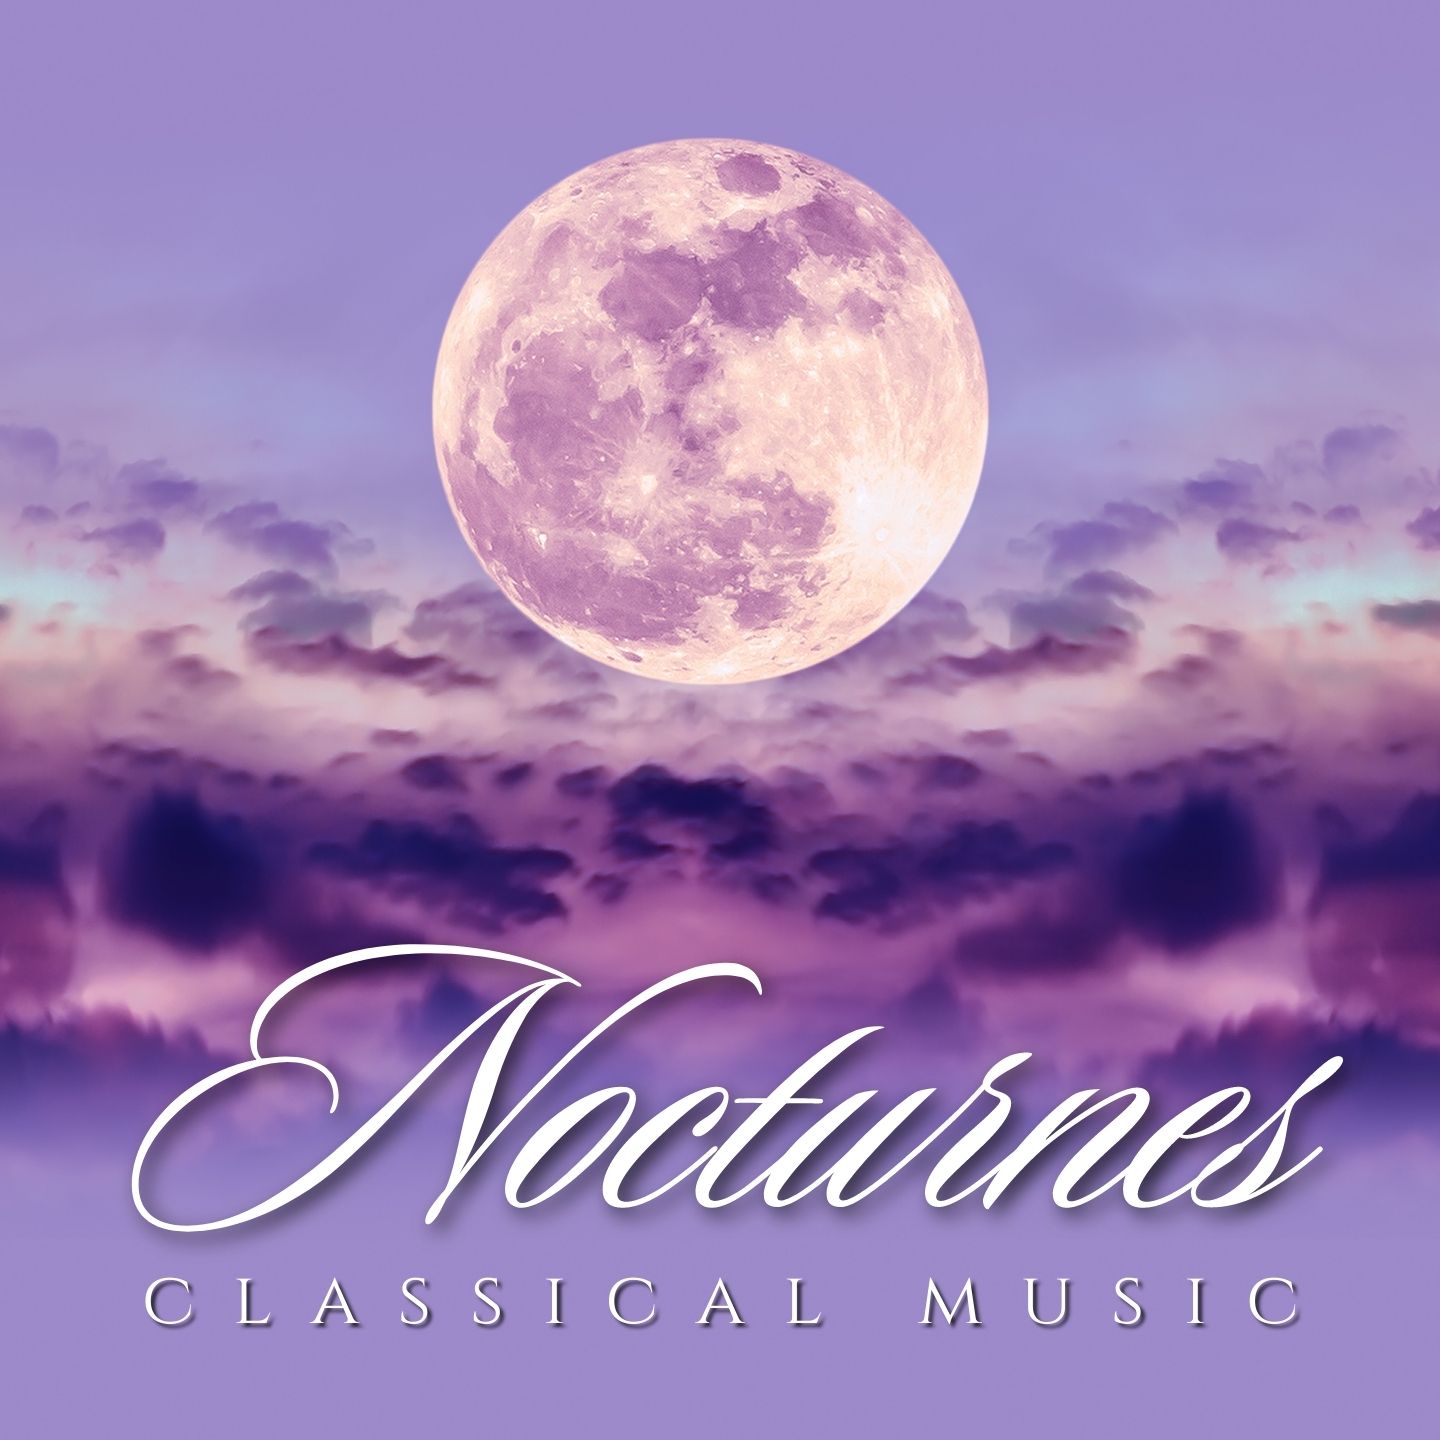 Classical Music - Nocturnes